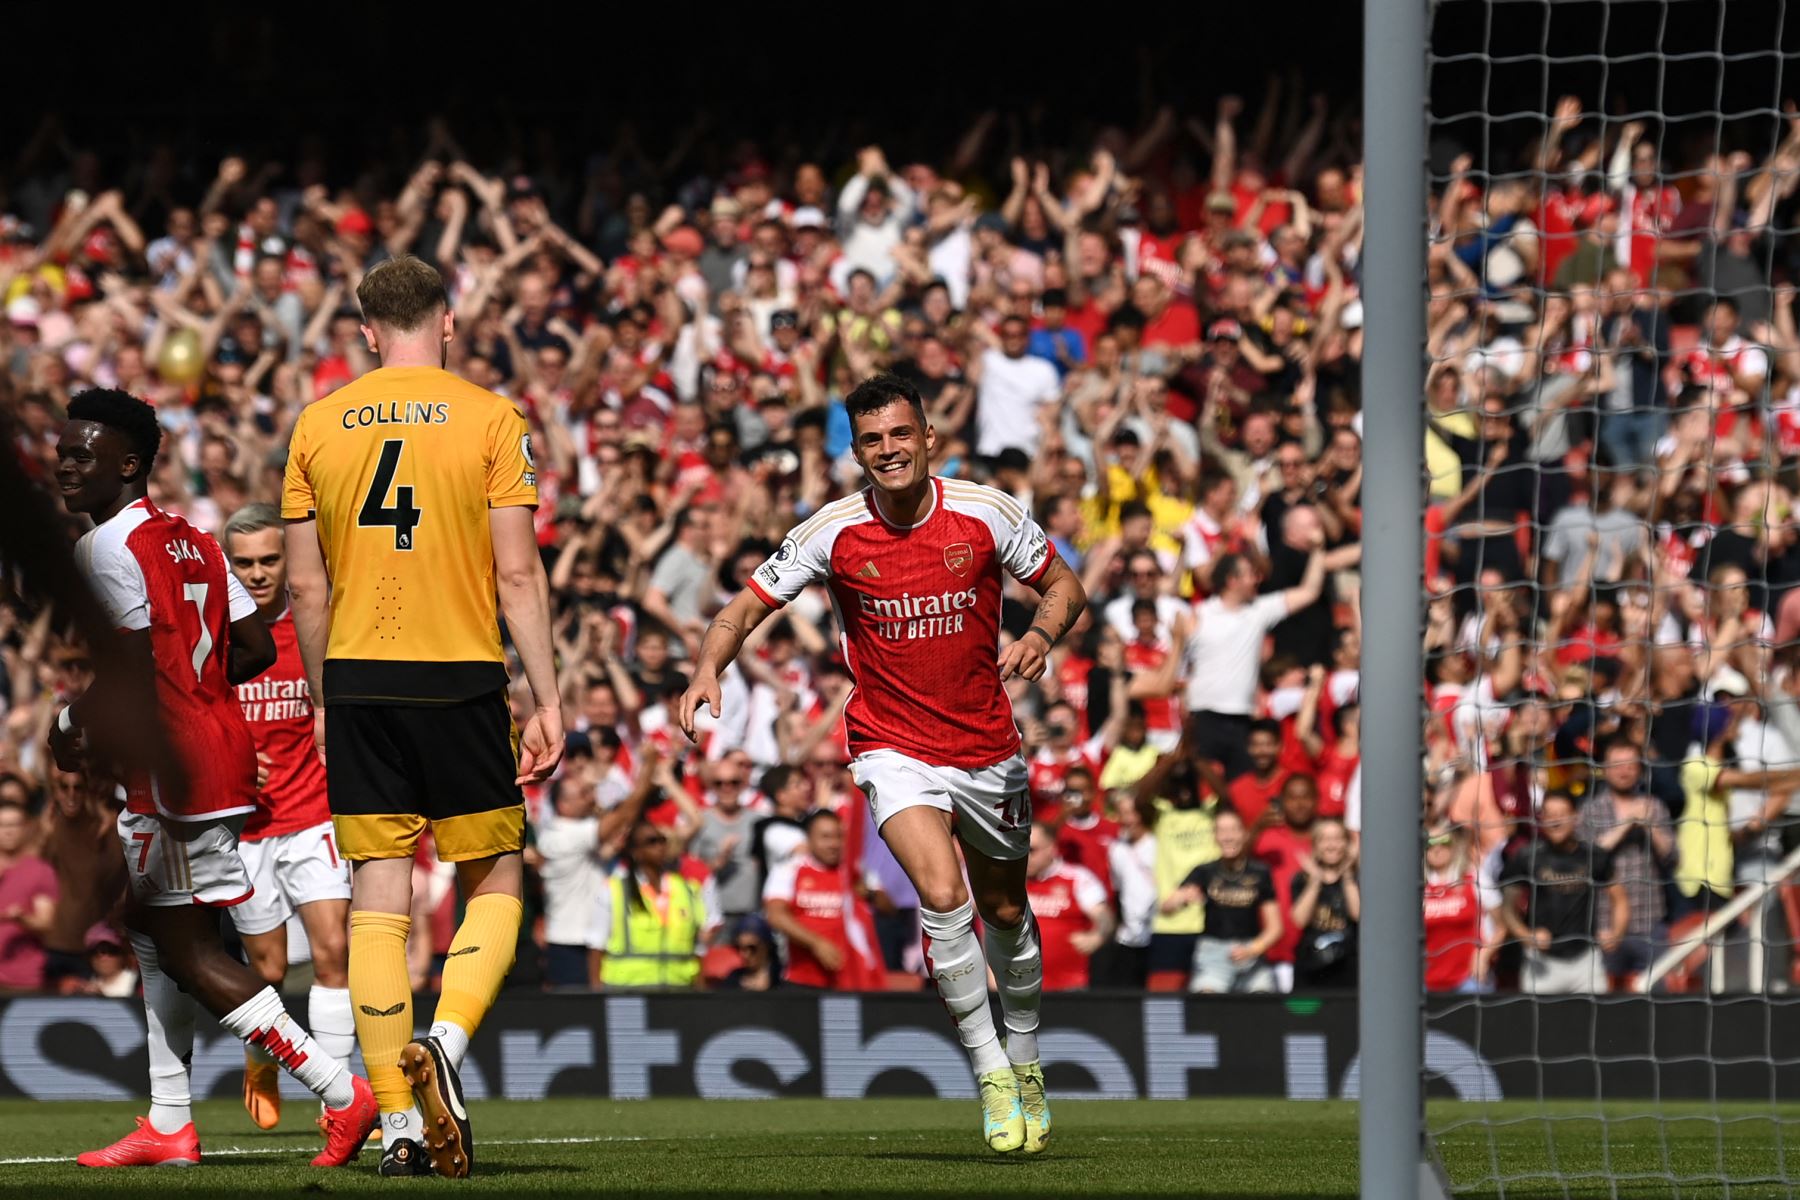 El mediocampista suizo del Arsenal Granit Xhaka celebra después de marcar el gol de apertura durante el partido de fútbol de la Premier League inglesa entre el Arsenal y el Wolverhampton. Foto:ANDINA/ AFP